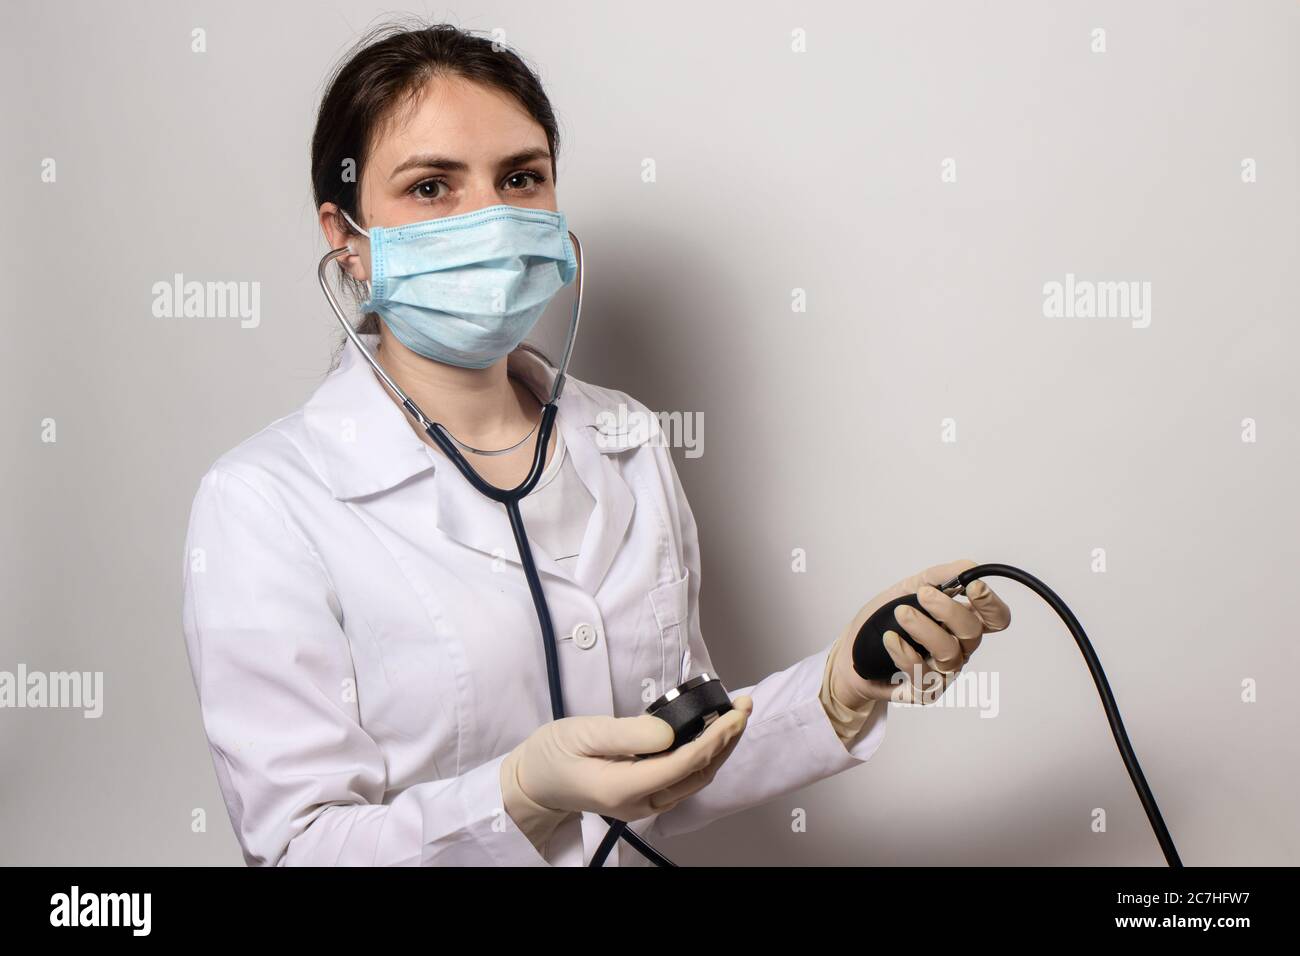 Arzt in einer medizinischen Maske misst der Kardiologe den Blutdruck mit einem Blutdruckmessgerät. Stockfoto